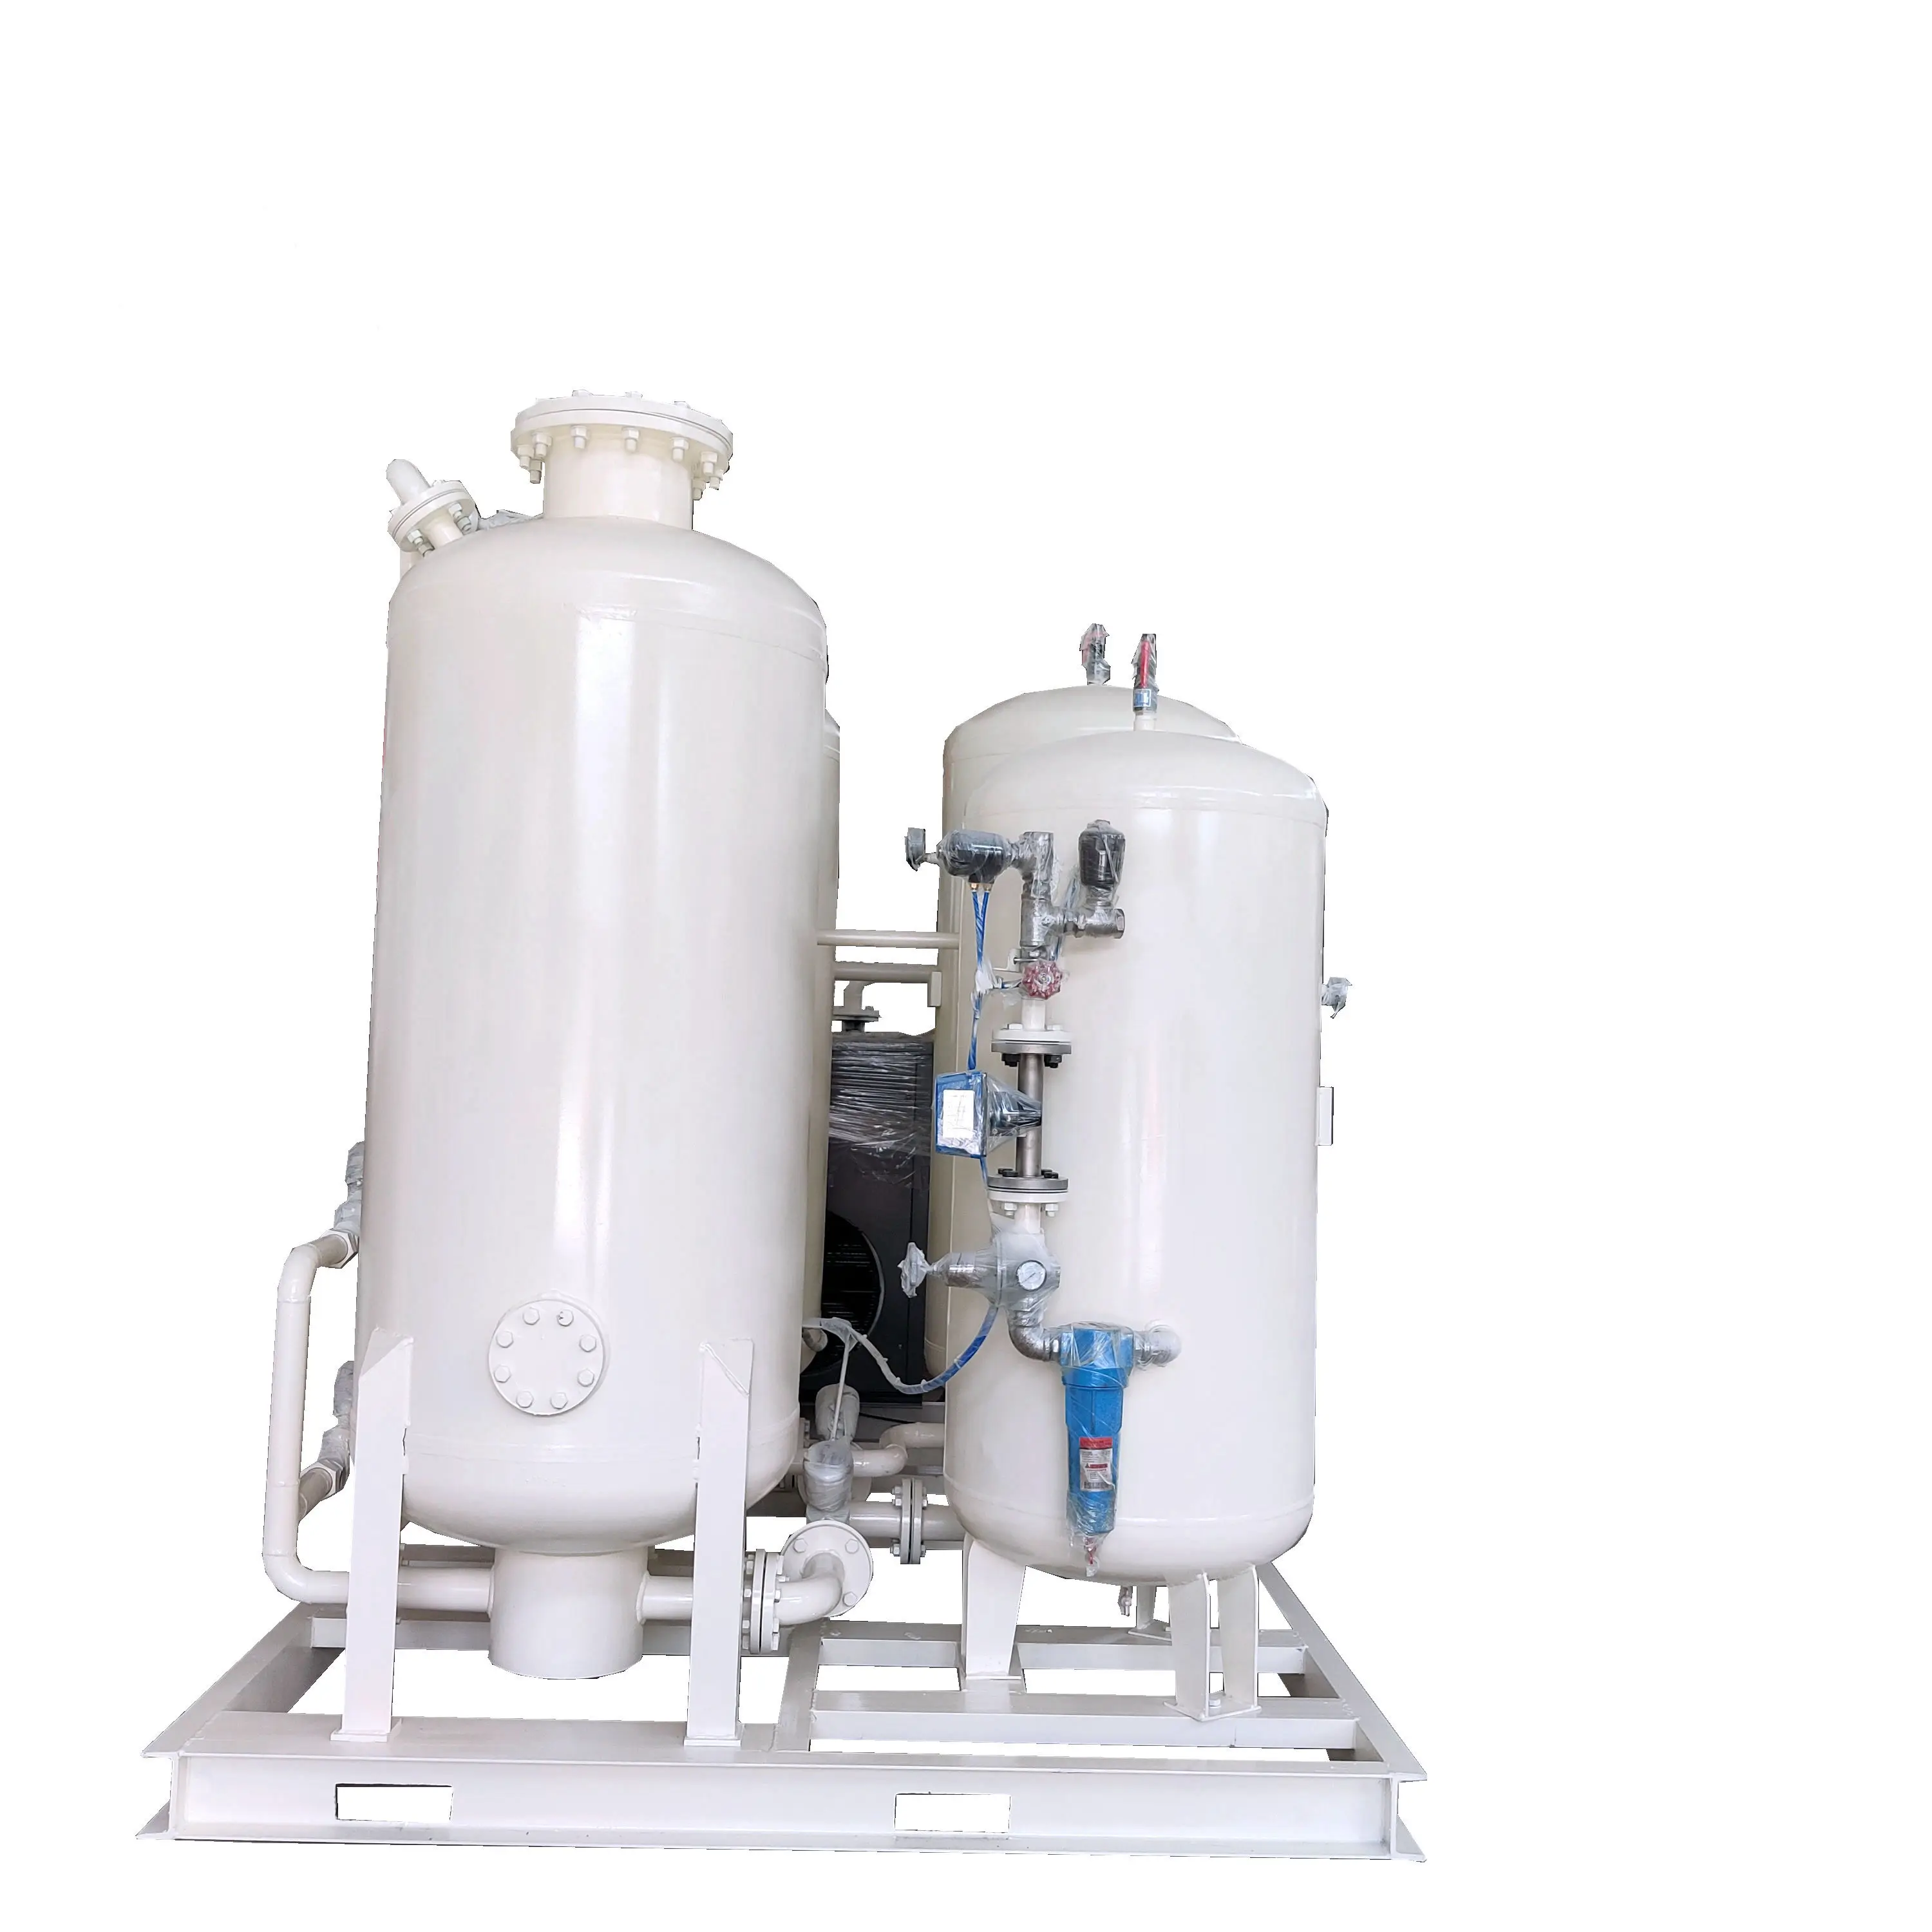 Полный генератор кислорода, интеллектуальная версия, контейнер Psa, кислородная станция, кислородный и азотный газовый завод